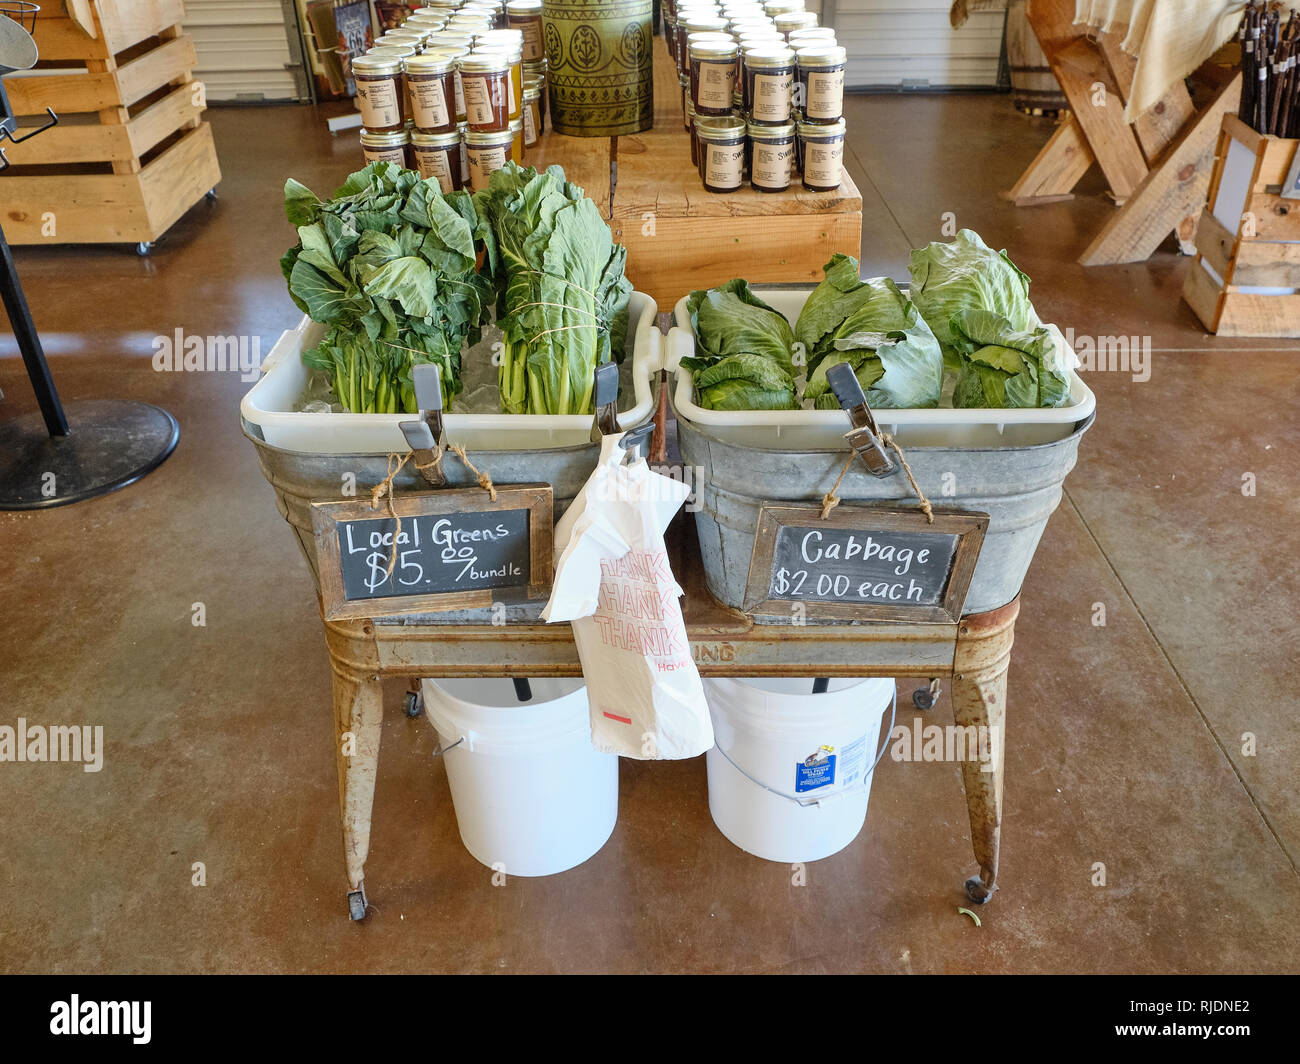 Frische südlichen lokal angebauten Grünen und Kohl auf dem Display zum Verkauf an einer ländlichen Alabama Bauernhof Markt oder Farmer's Market in Hecht Straße Alabama, USA. Stockfoto